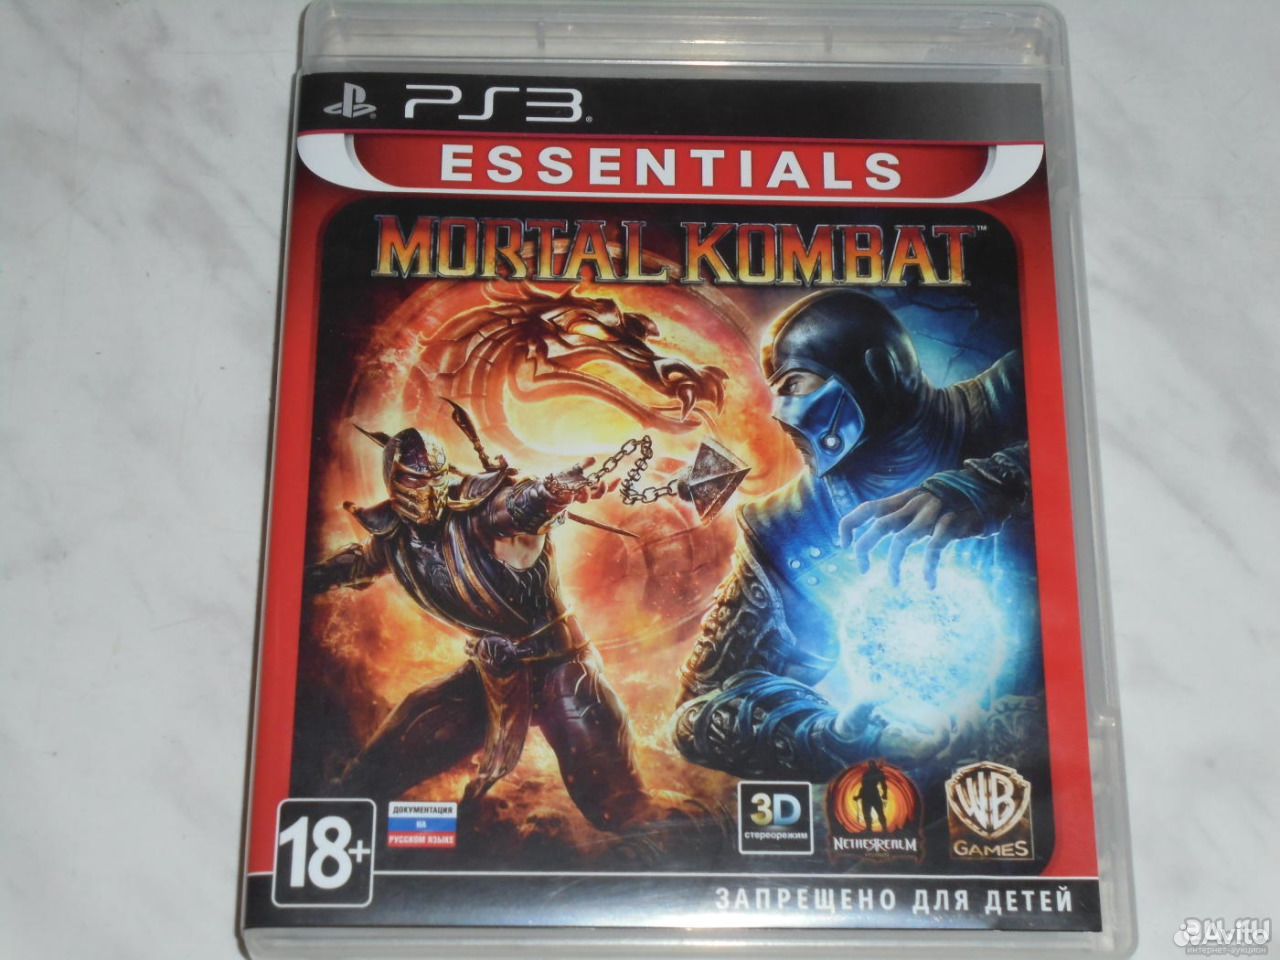 Мортал комбат сони плейстейшен 3. Mortal Kombat (ps3). Диск мортал комбат на плейстейшен 3. Диск Mortal Kombat XL на ps3. Диск Mortal Kombat на PLAYSTATION 3.